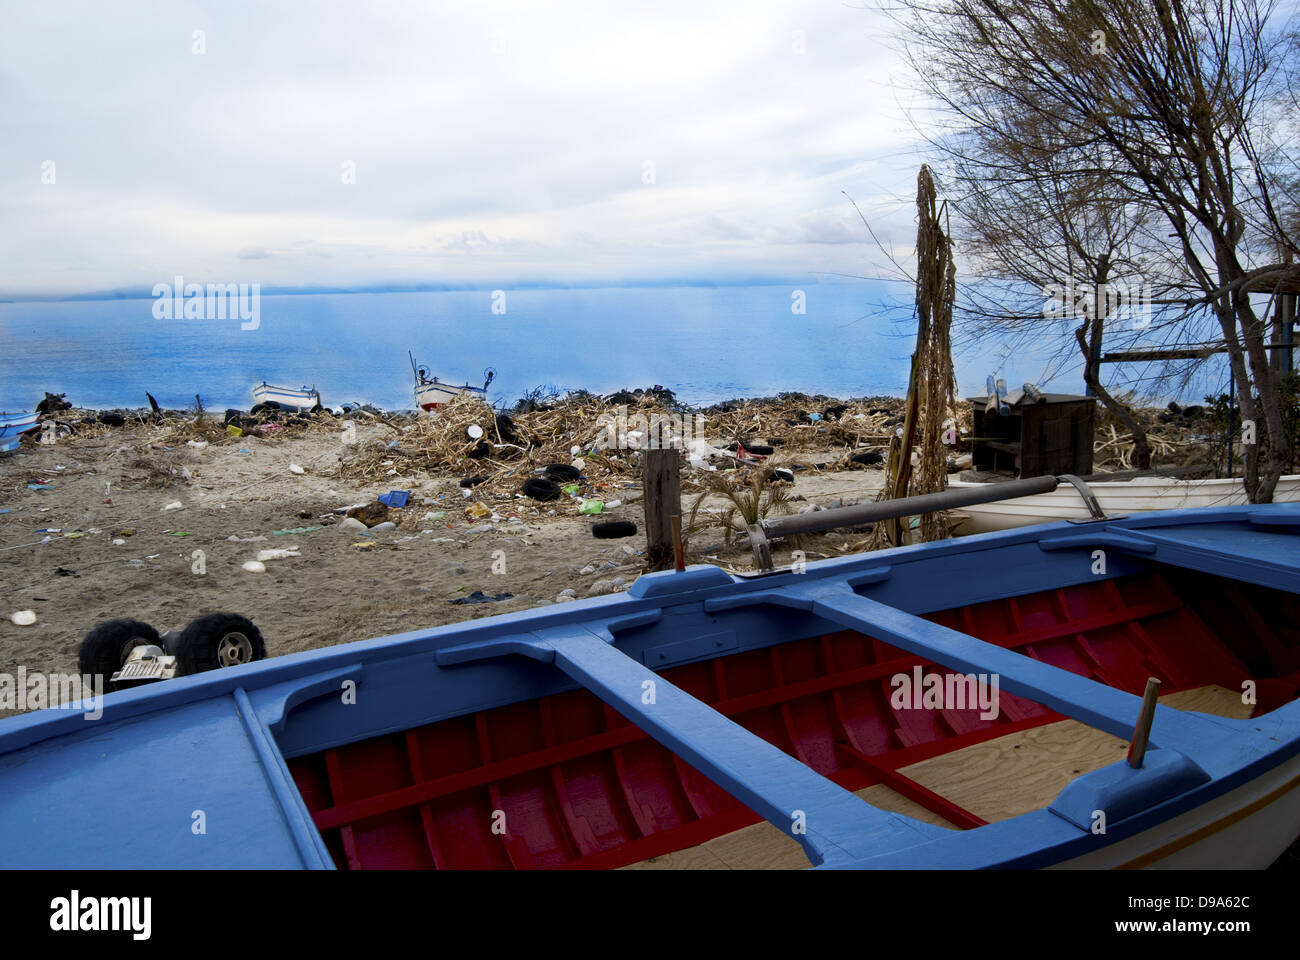 Inquinamento ambientale. Una spiaggia oh la Calabria con rifiuti e materiale inquinante Foto Stock